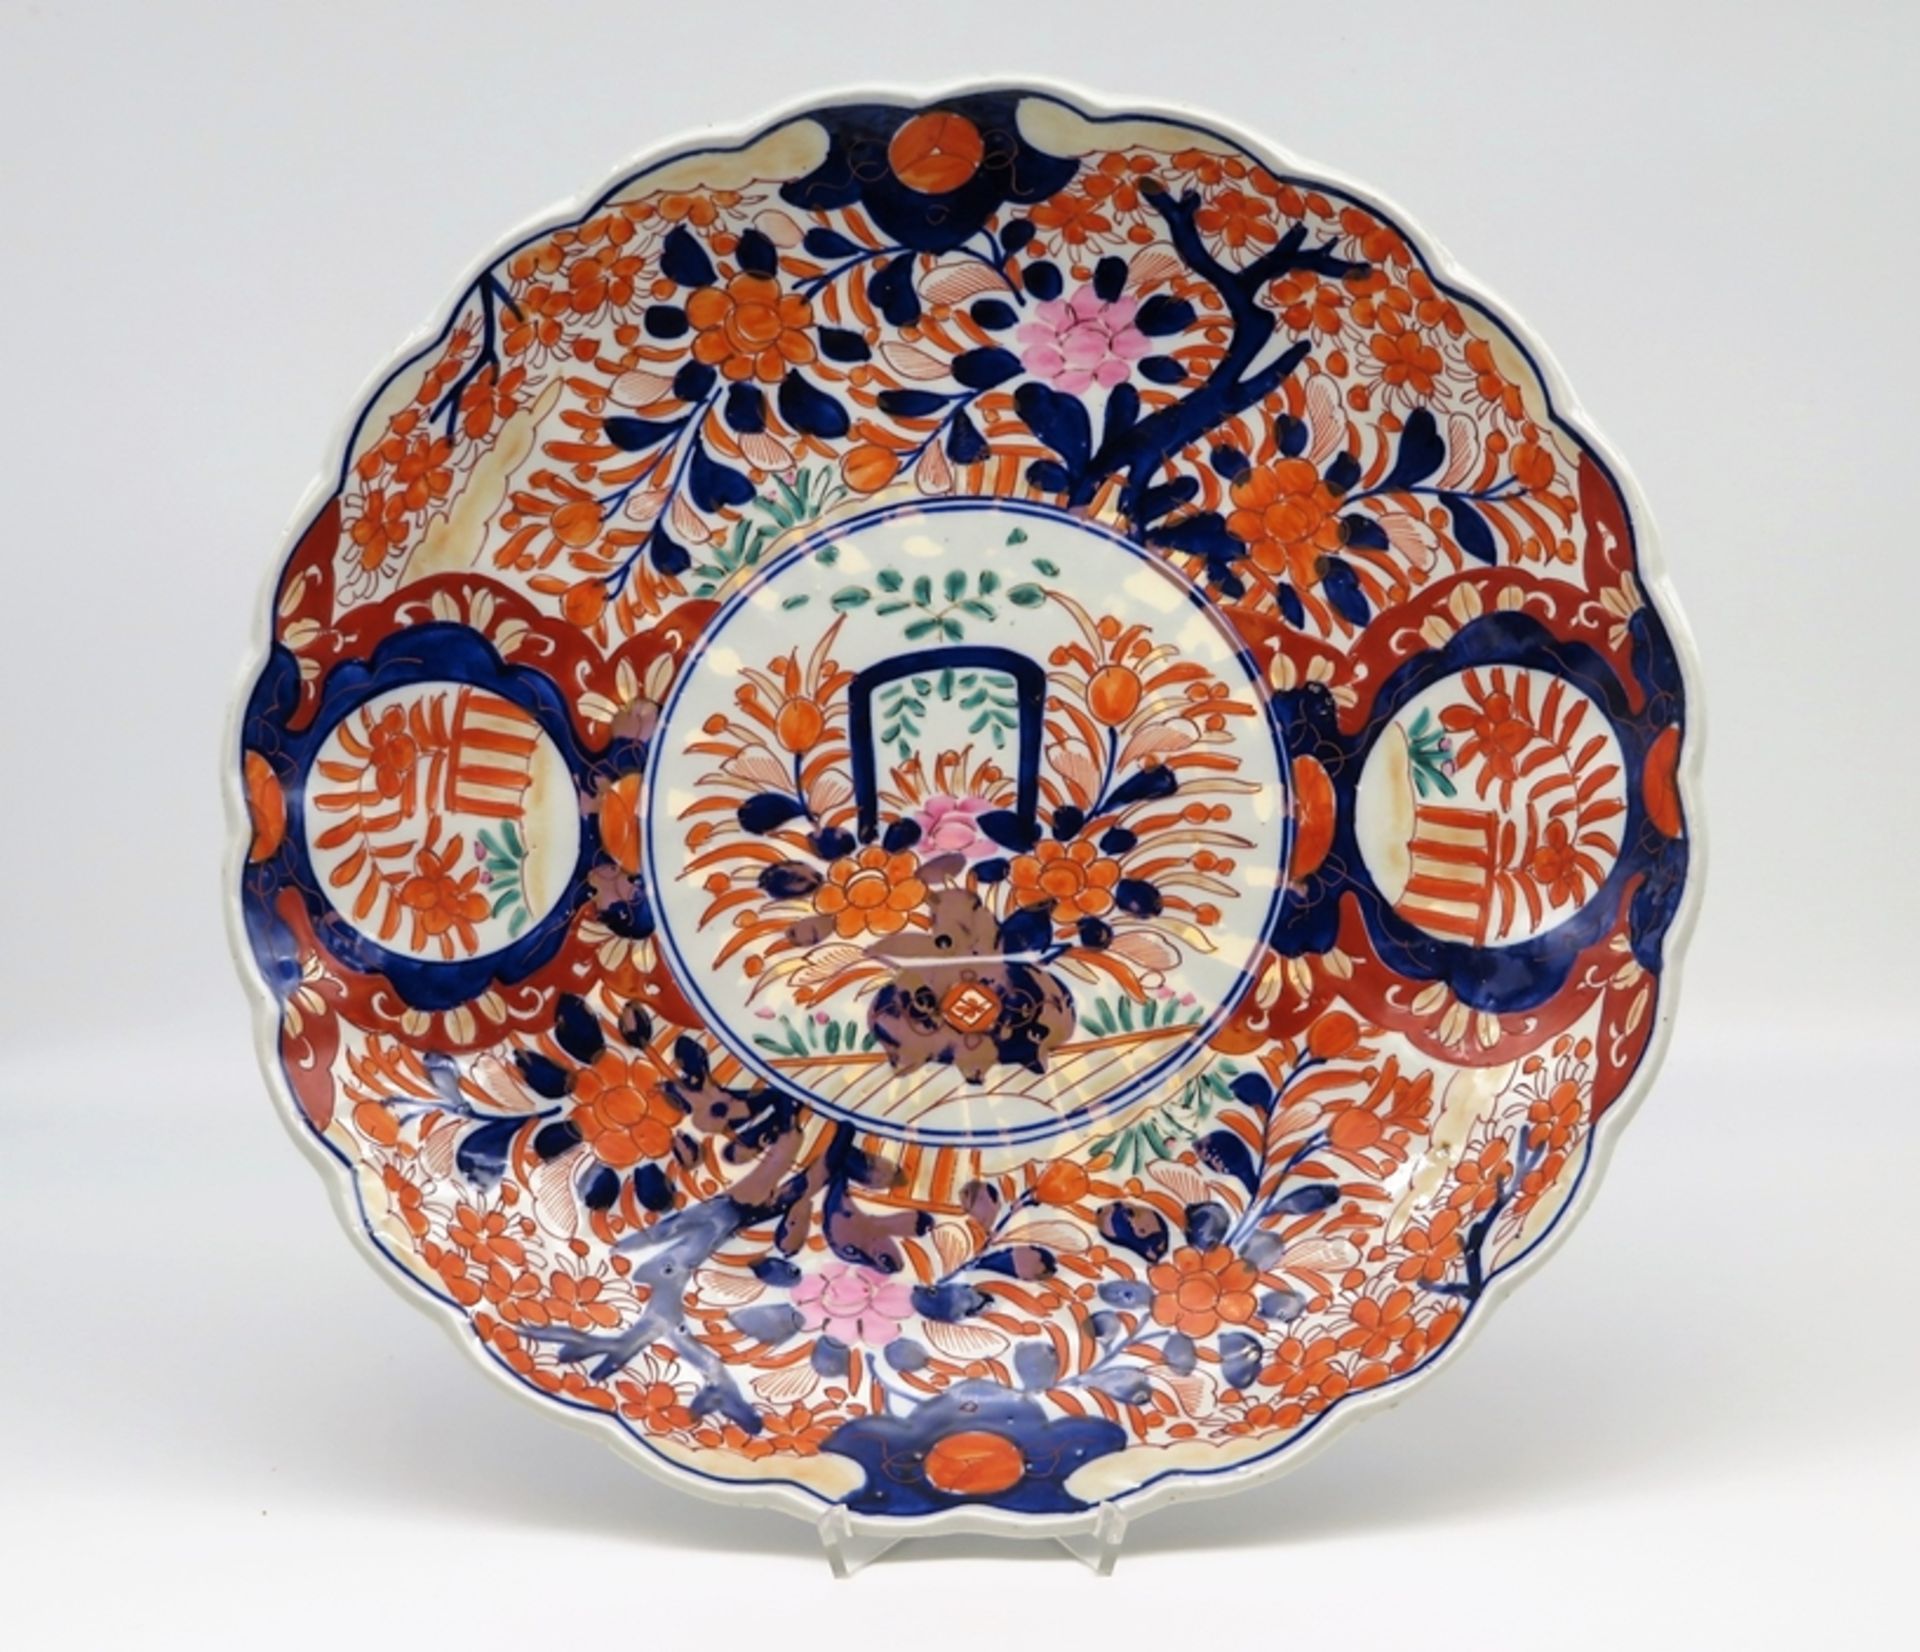 Großer Teller, Japan, Imari, Meiji Periode, 1868 - 1912, Porzellan mit polychromer Unter- und Überg